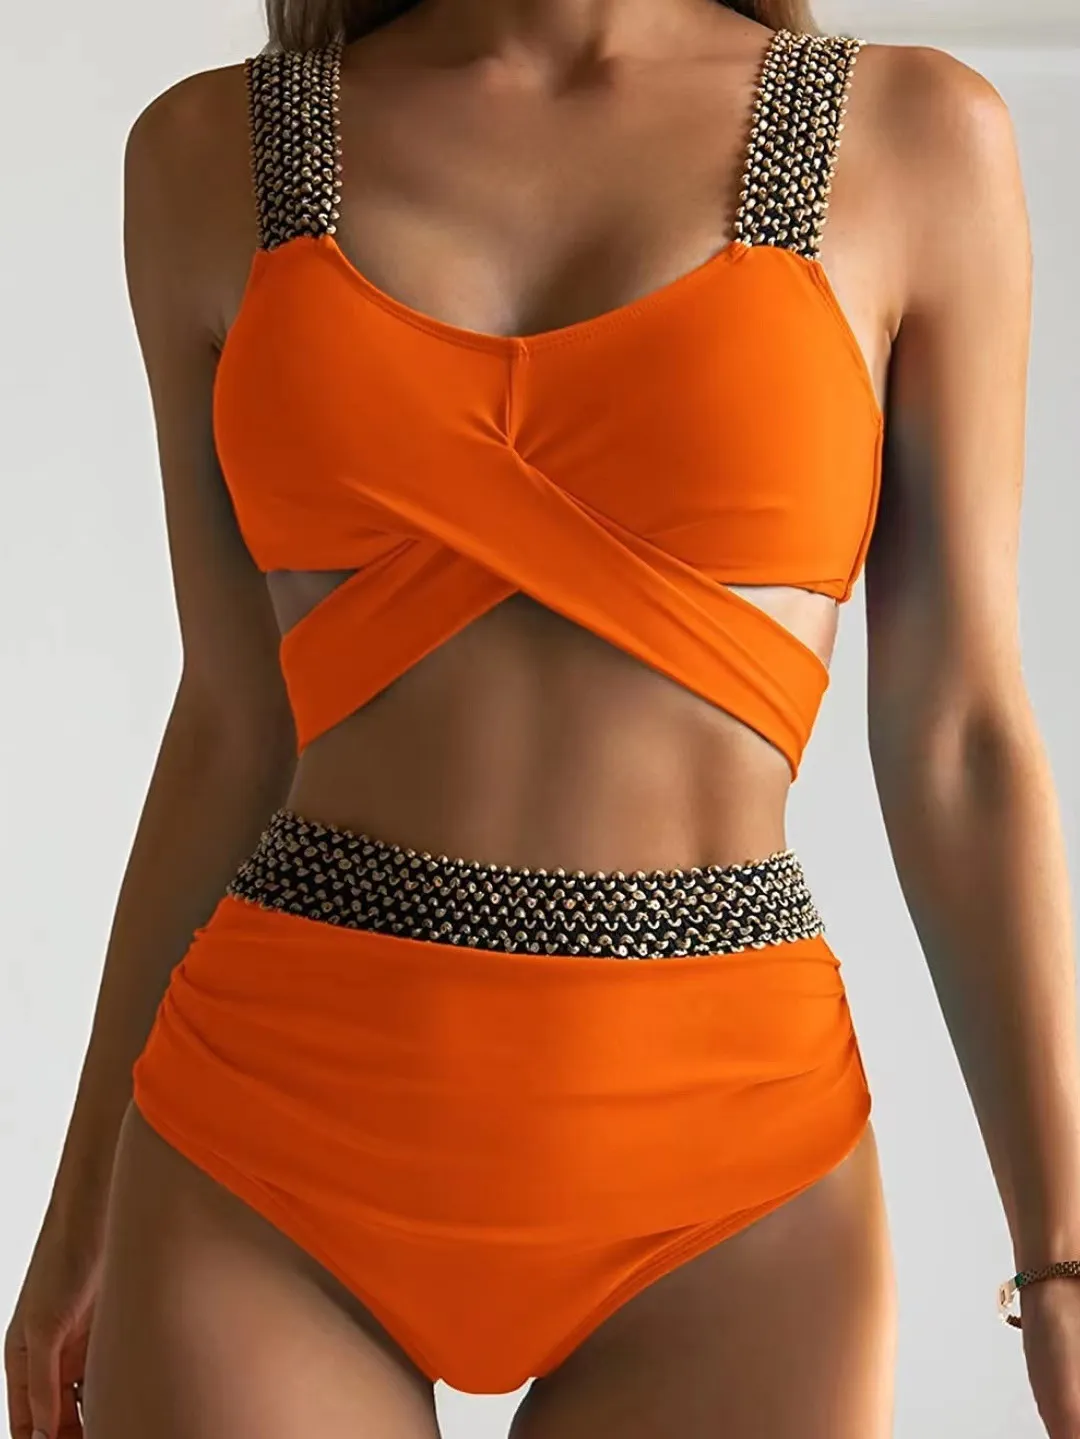 Новый бикини-купальный костюм Orange Color Foreign Trade Трехточечная сексуальная купальника Женщины Split Women Beach Wear Weef Set Jhu